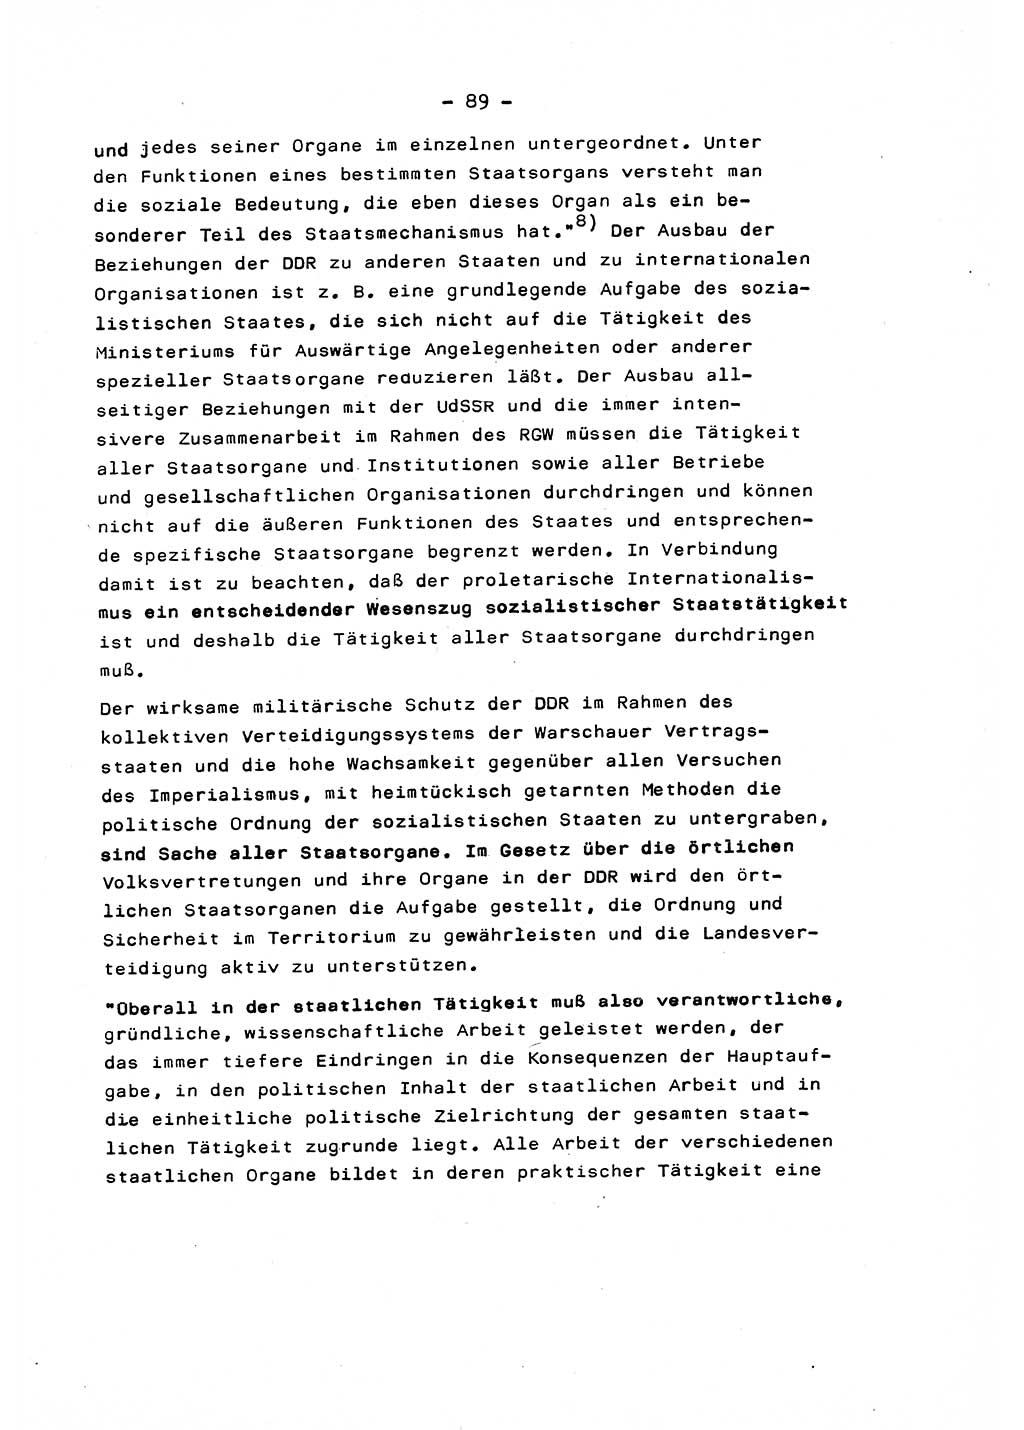 Marxistisch-leninistische Staats- und Rechtstheorie [Deutsche Demokratische Republik (DDR)] 1975, Seite 89 (ML St.-R.-Th. DDR 1975, S. 89)